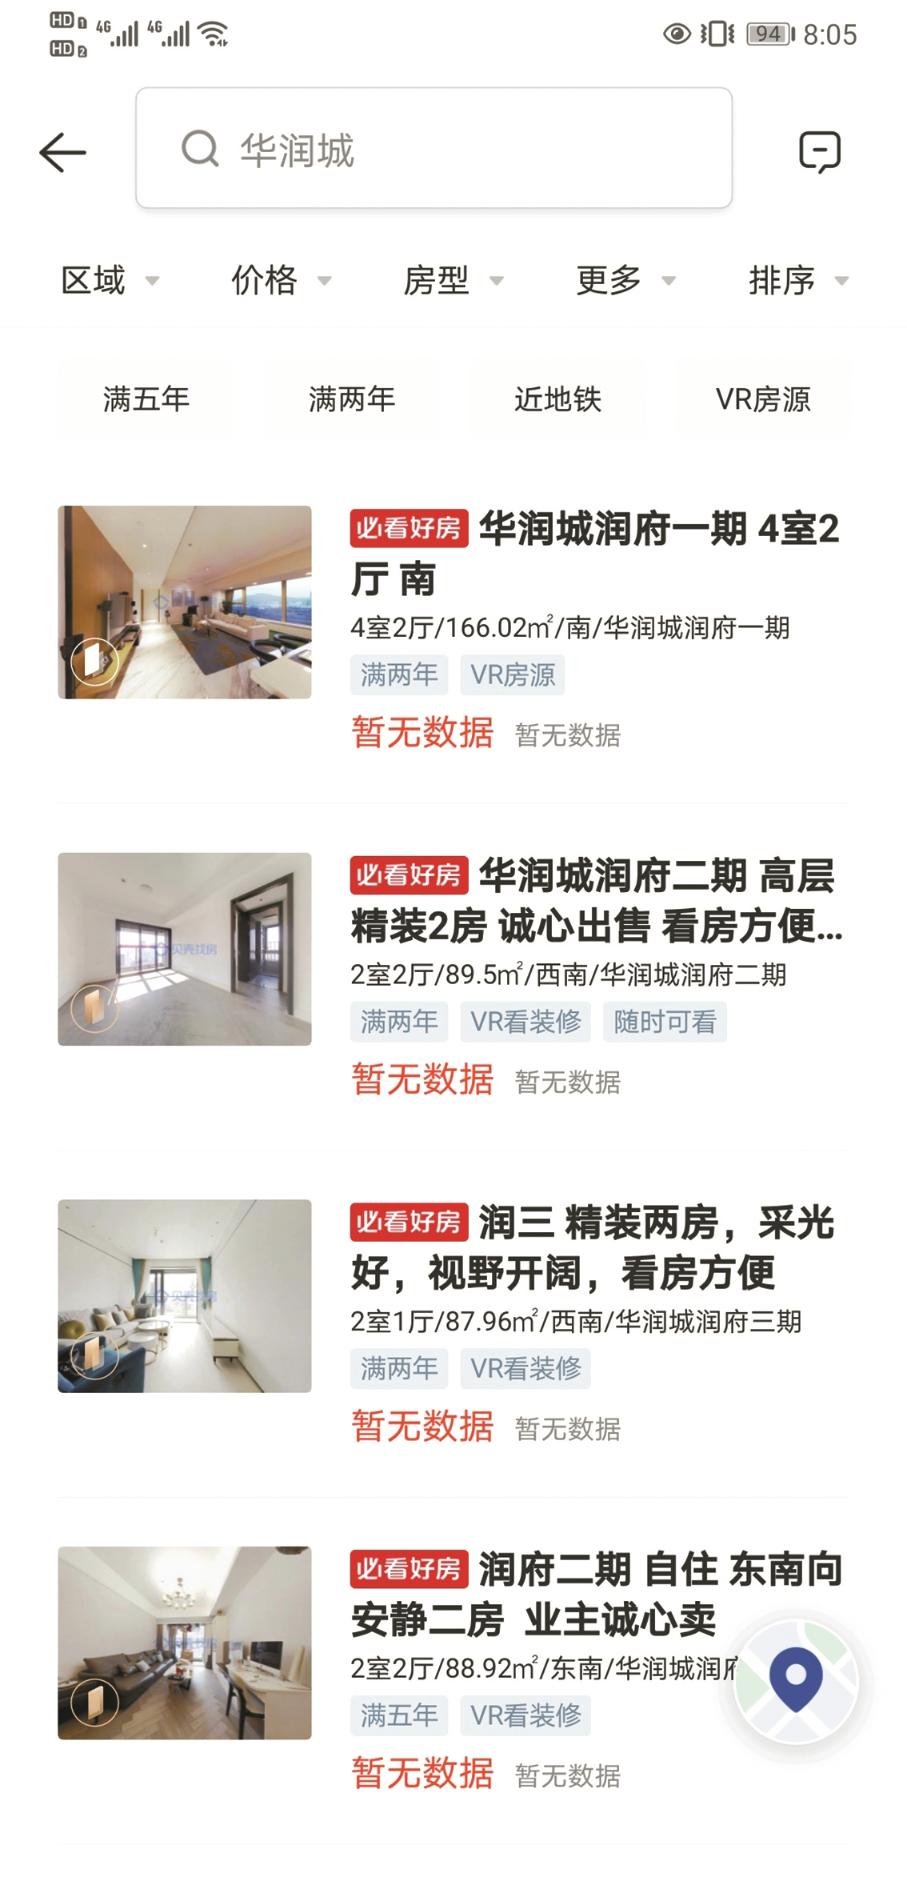 深圳房地产市场监管并招募多个中介平台以阻止二手房报价